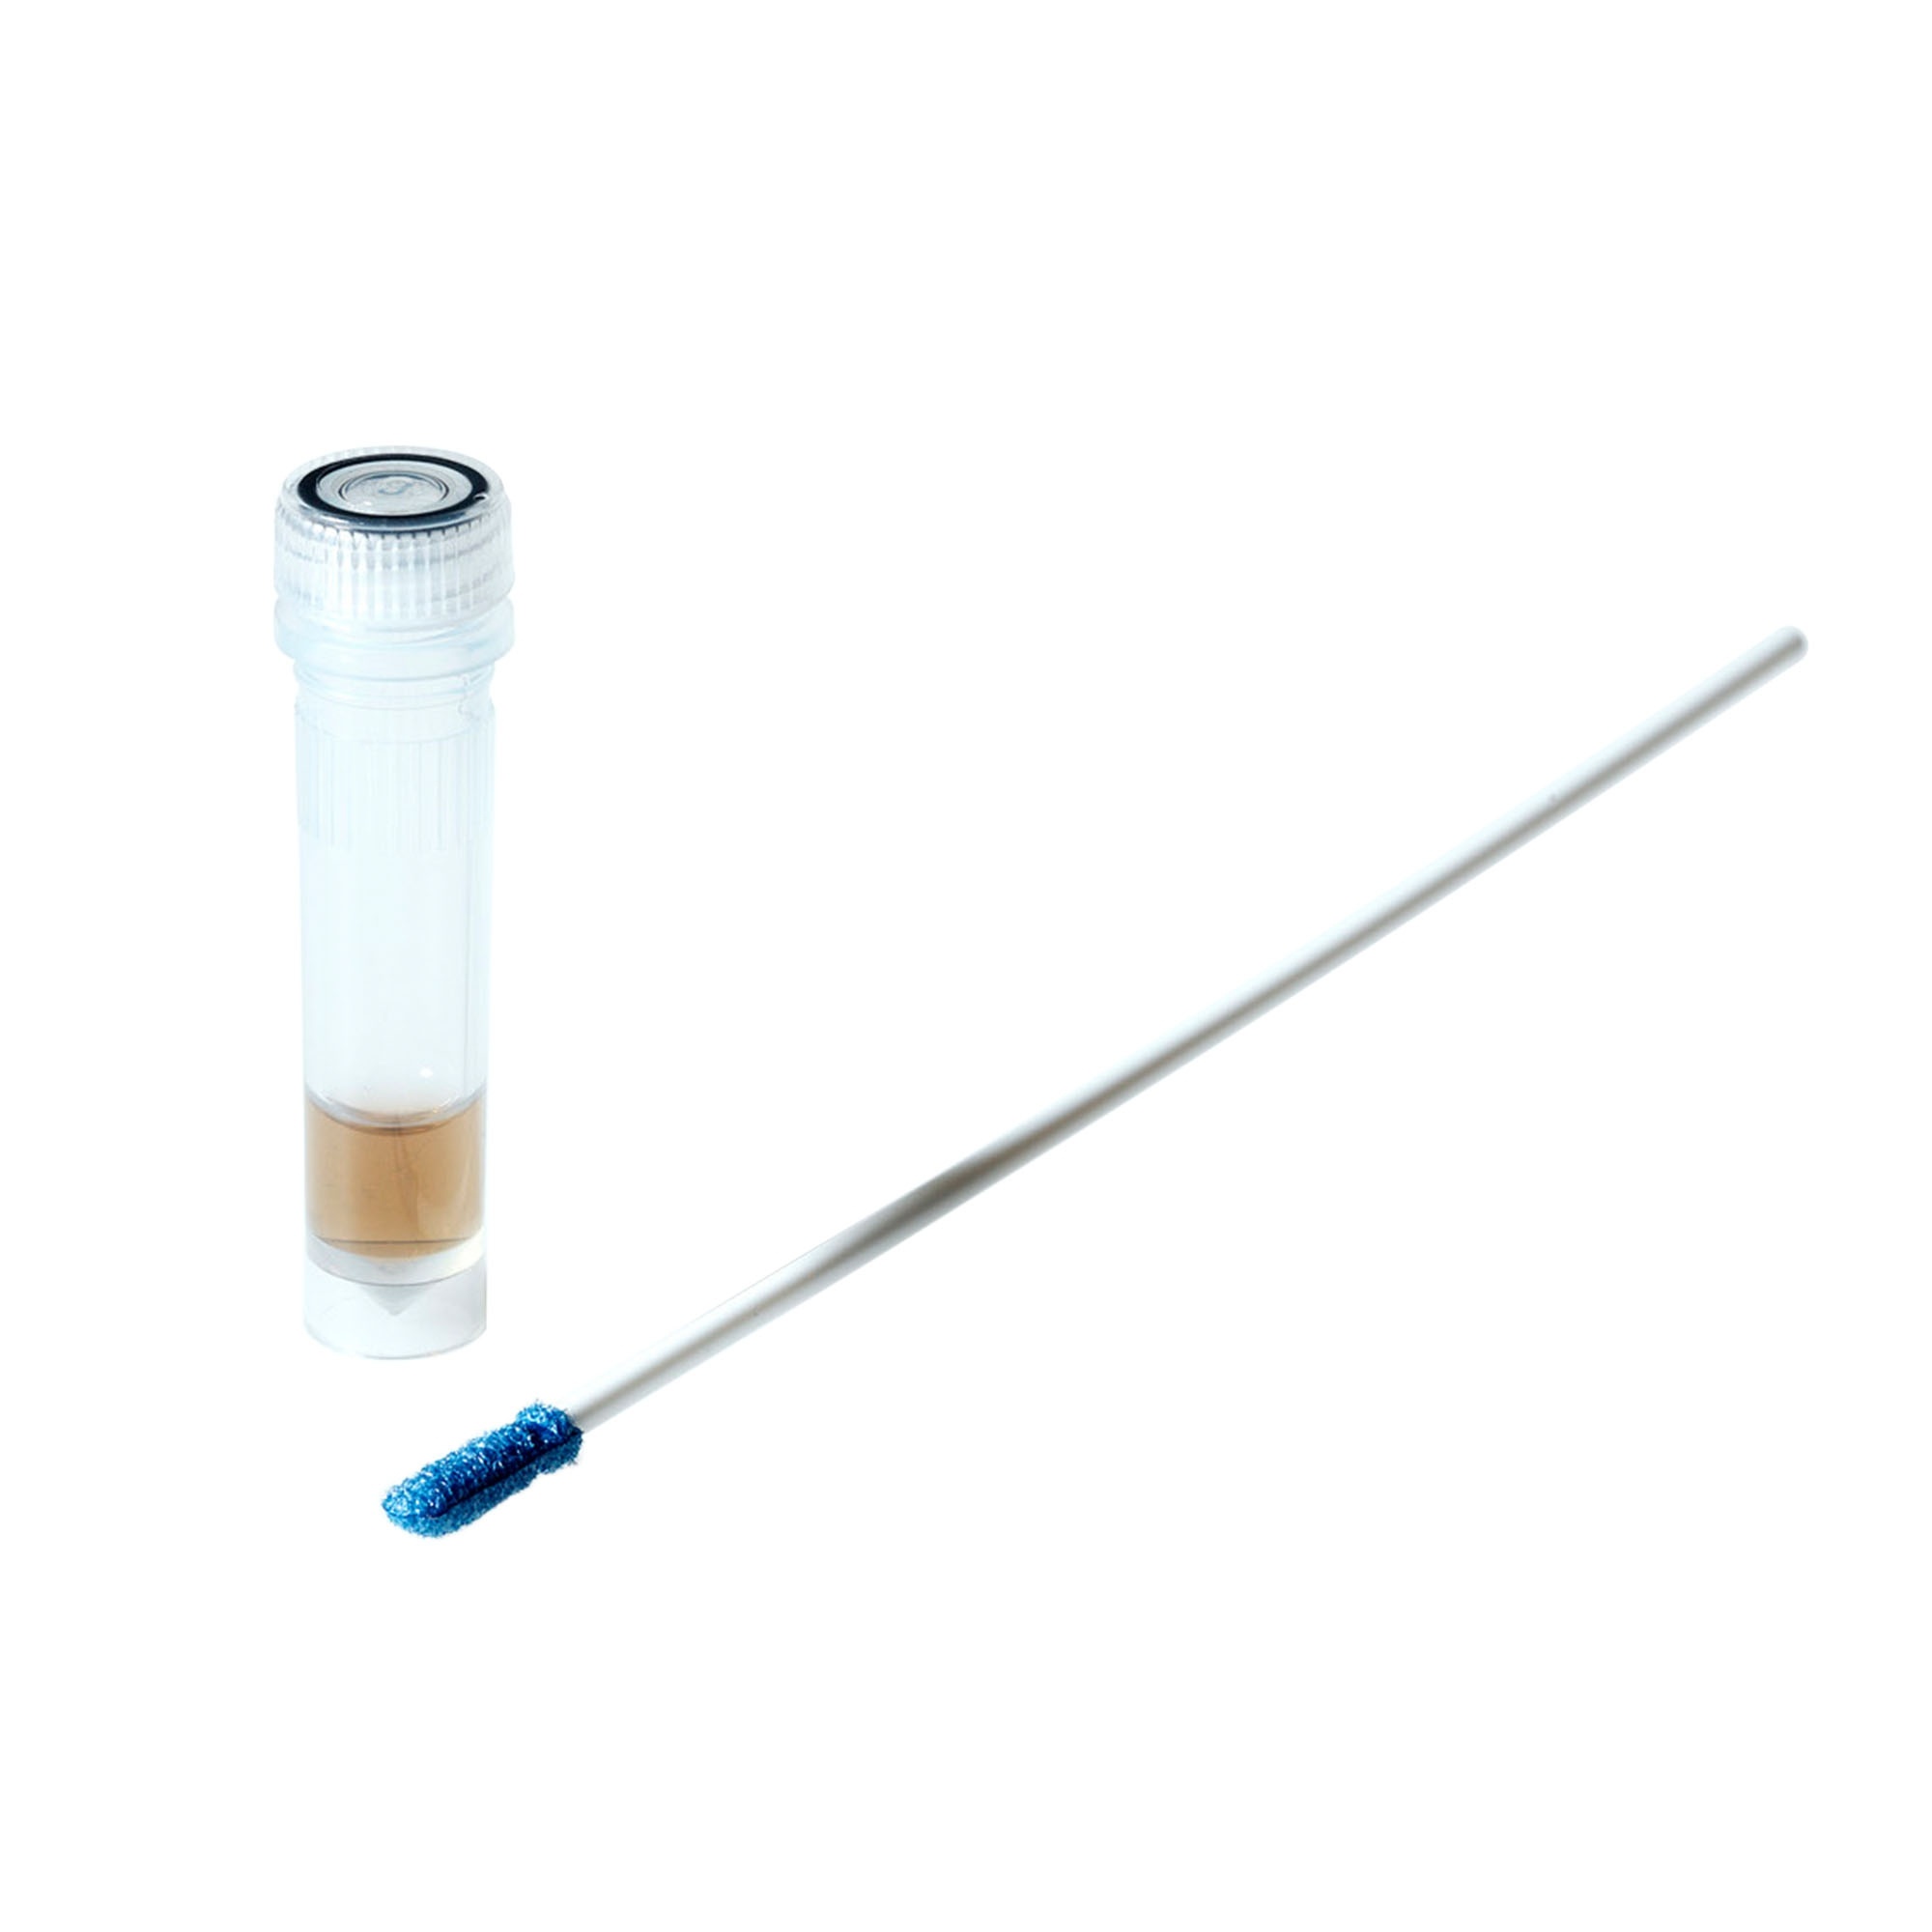 Getinge Assured Protein Test Instrument Lumen Image